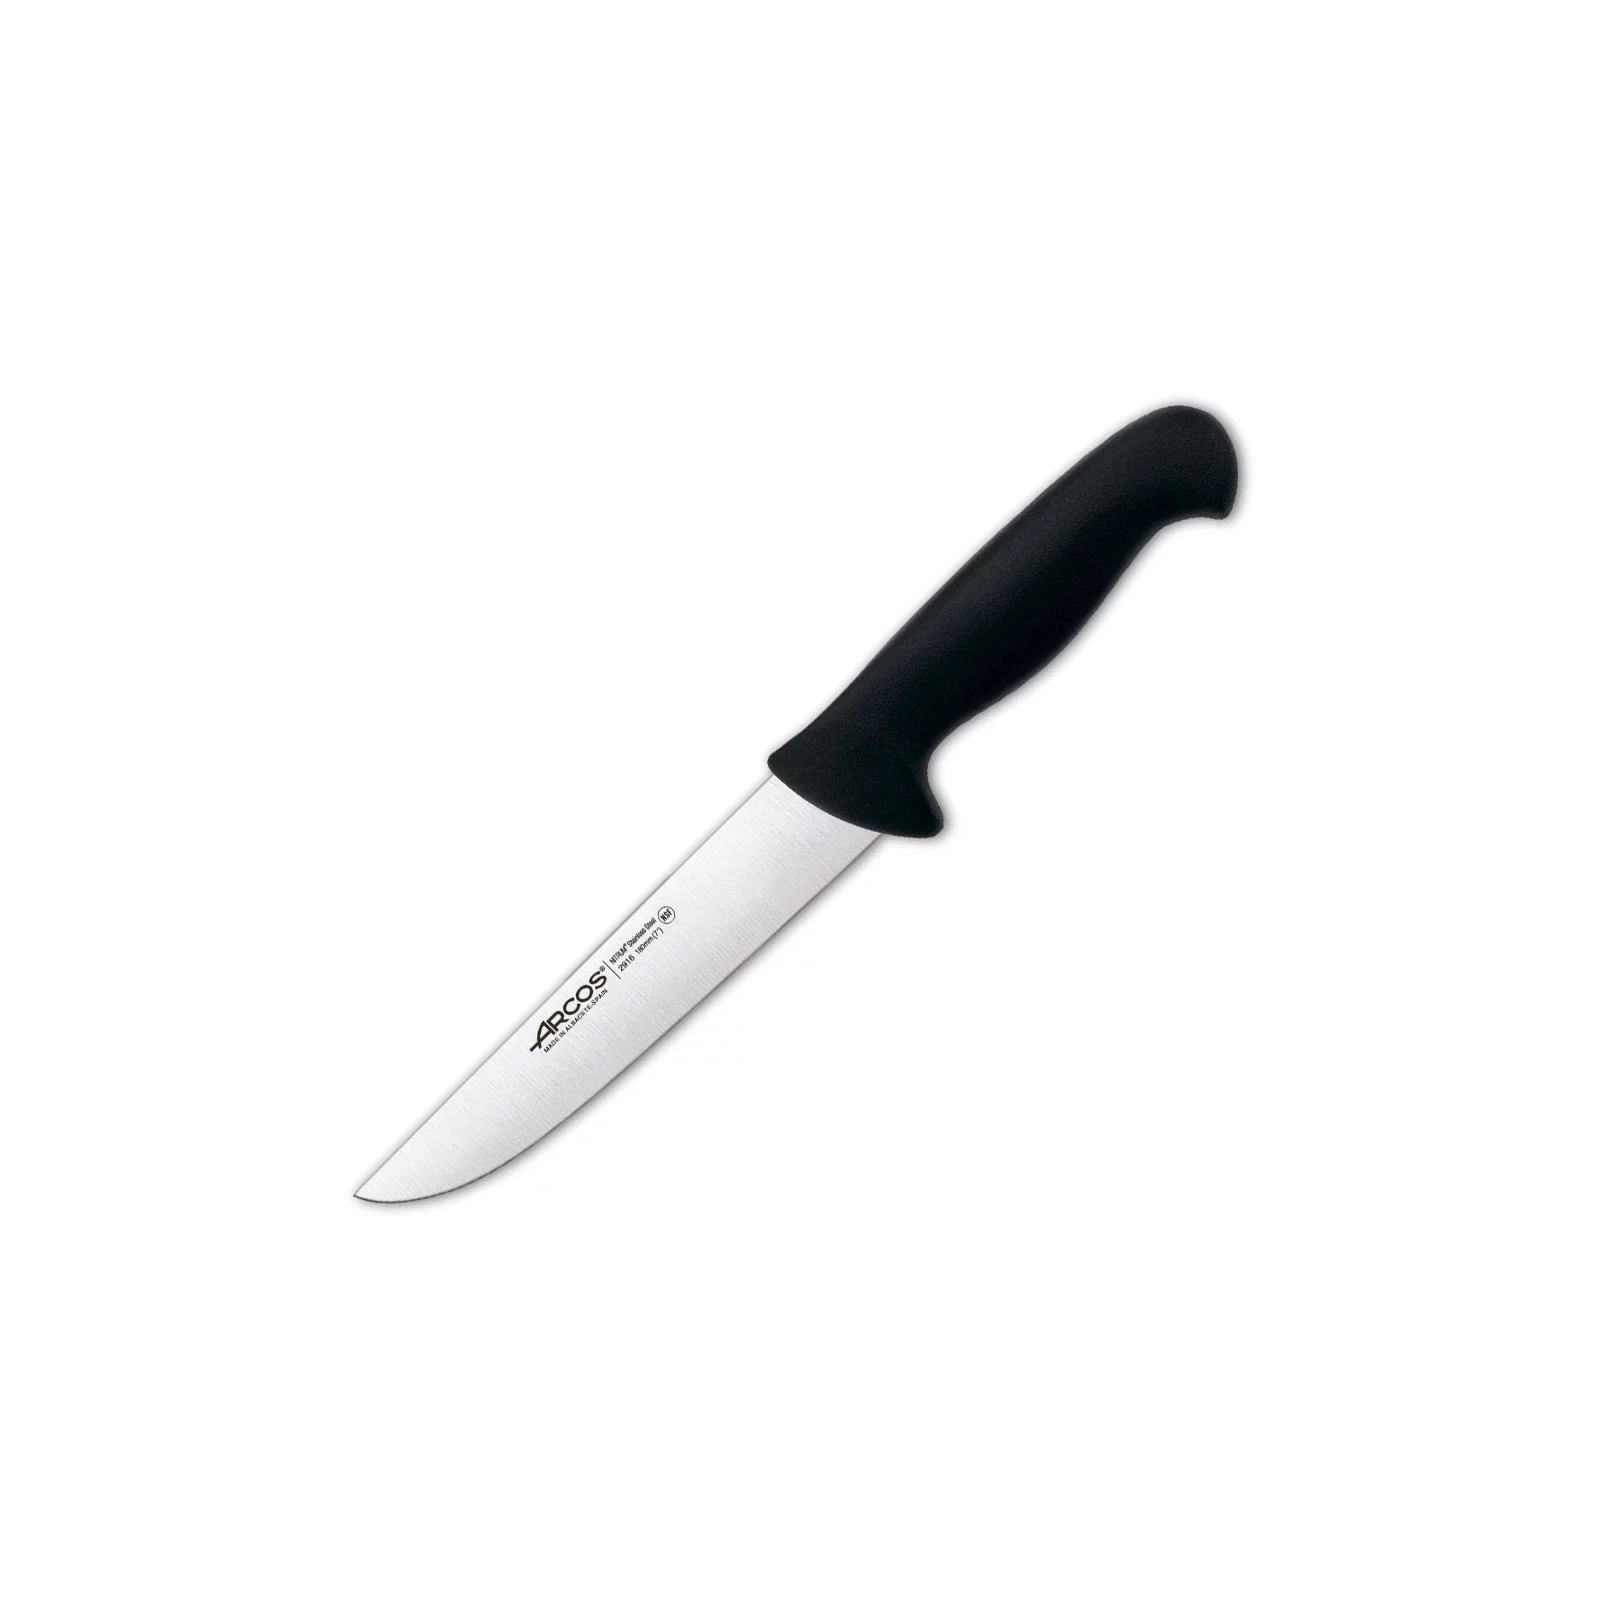 Кухонный нож Arcos серія "2900" для м'яса 180 мм Жовтий (291600)